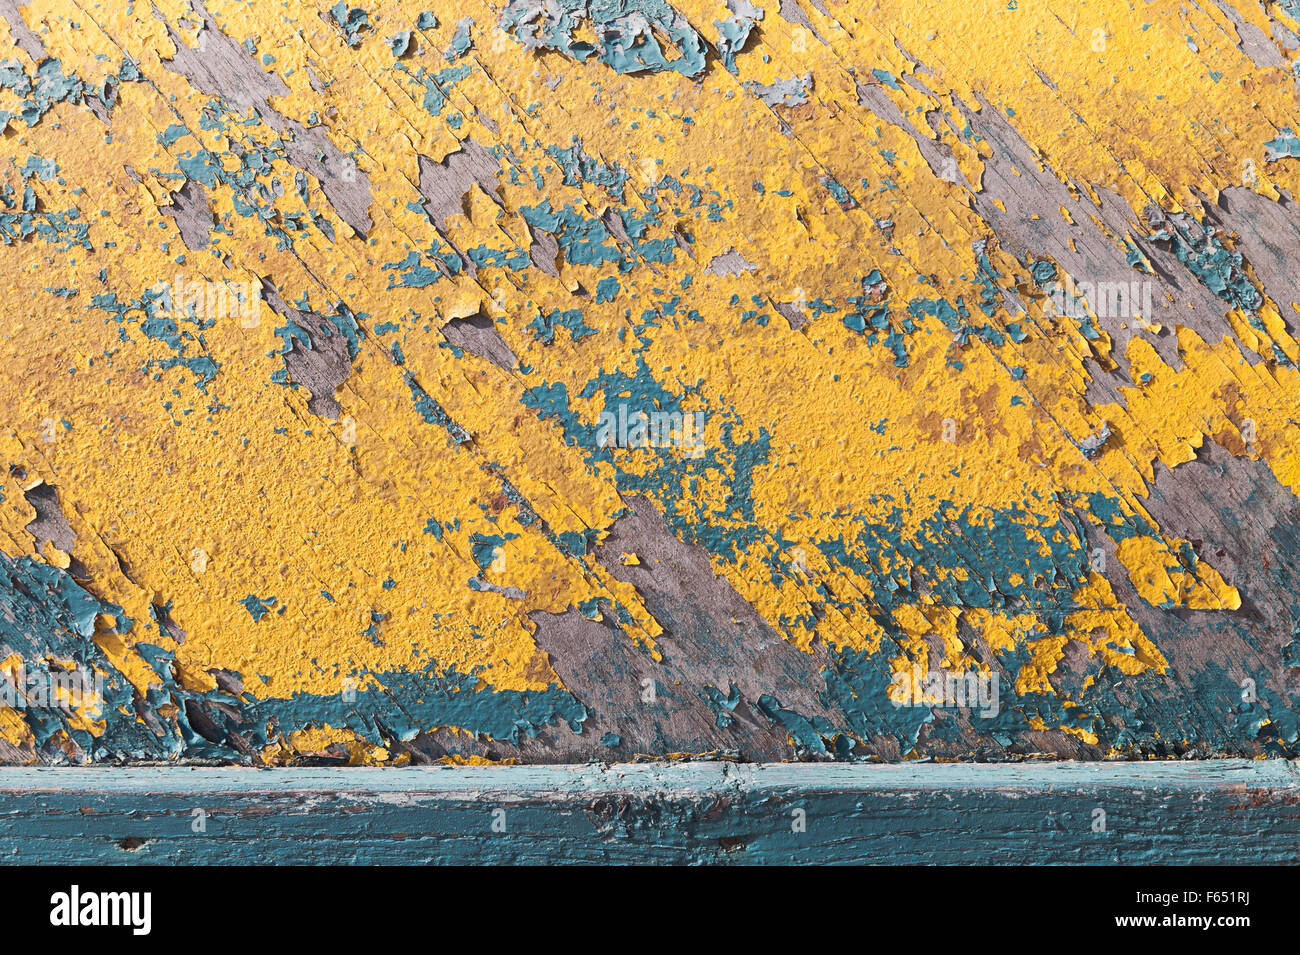 Grungy texture en bois avec d'anciennes couches de peinture bleu et jaune, vieille coque de bateau Banque D'Images